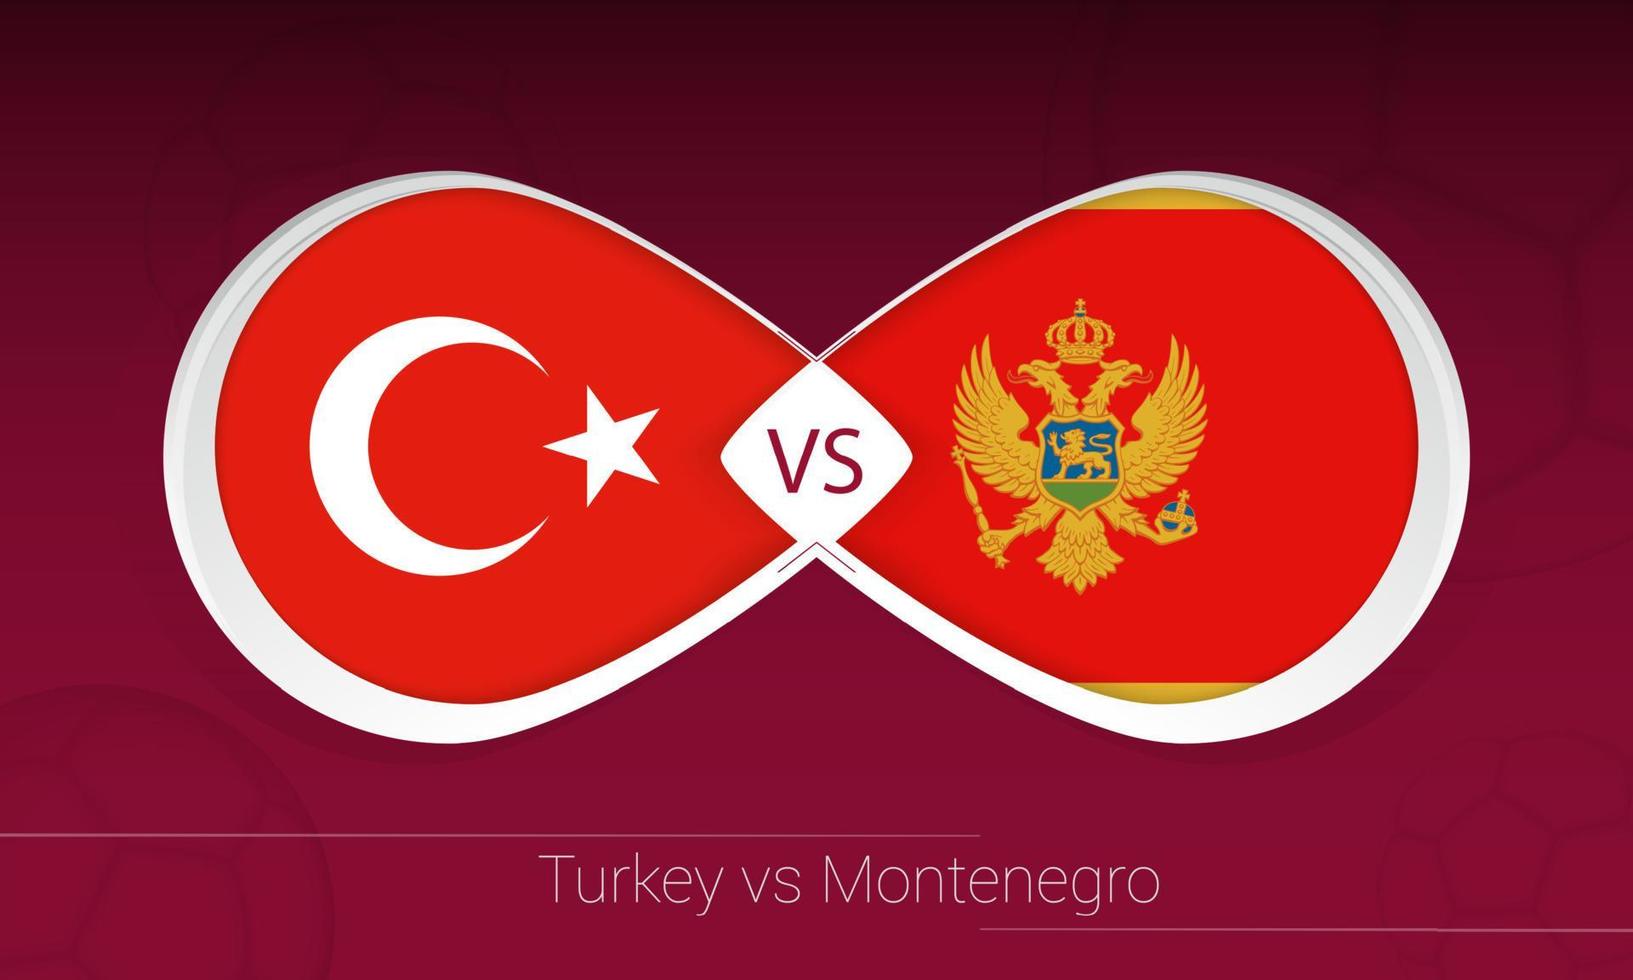 turquía vs montenegro en competición de fútbol, grupo g. versus icono en el fondo del fútbol. vector